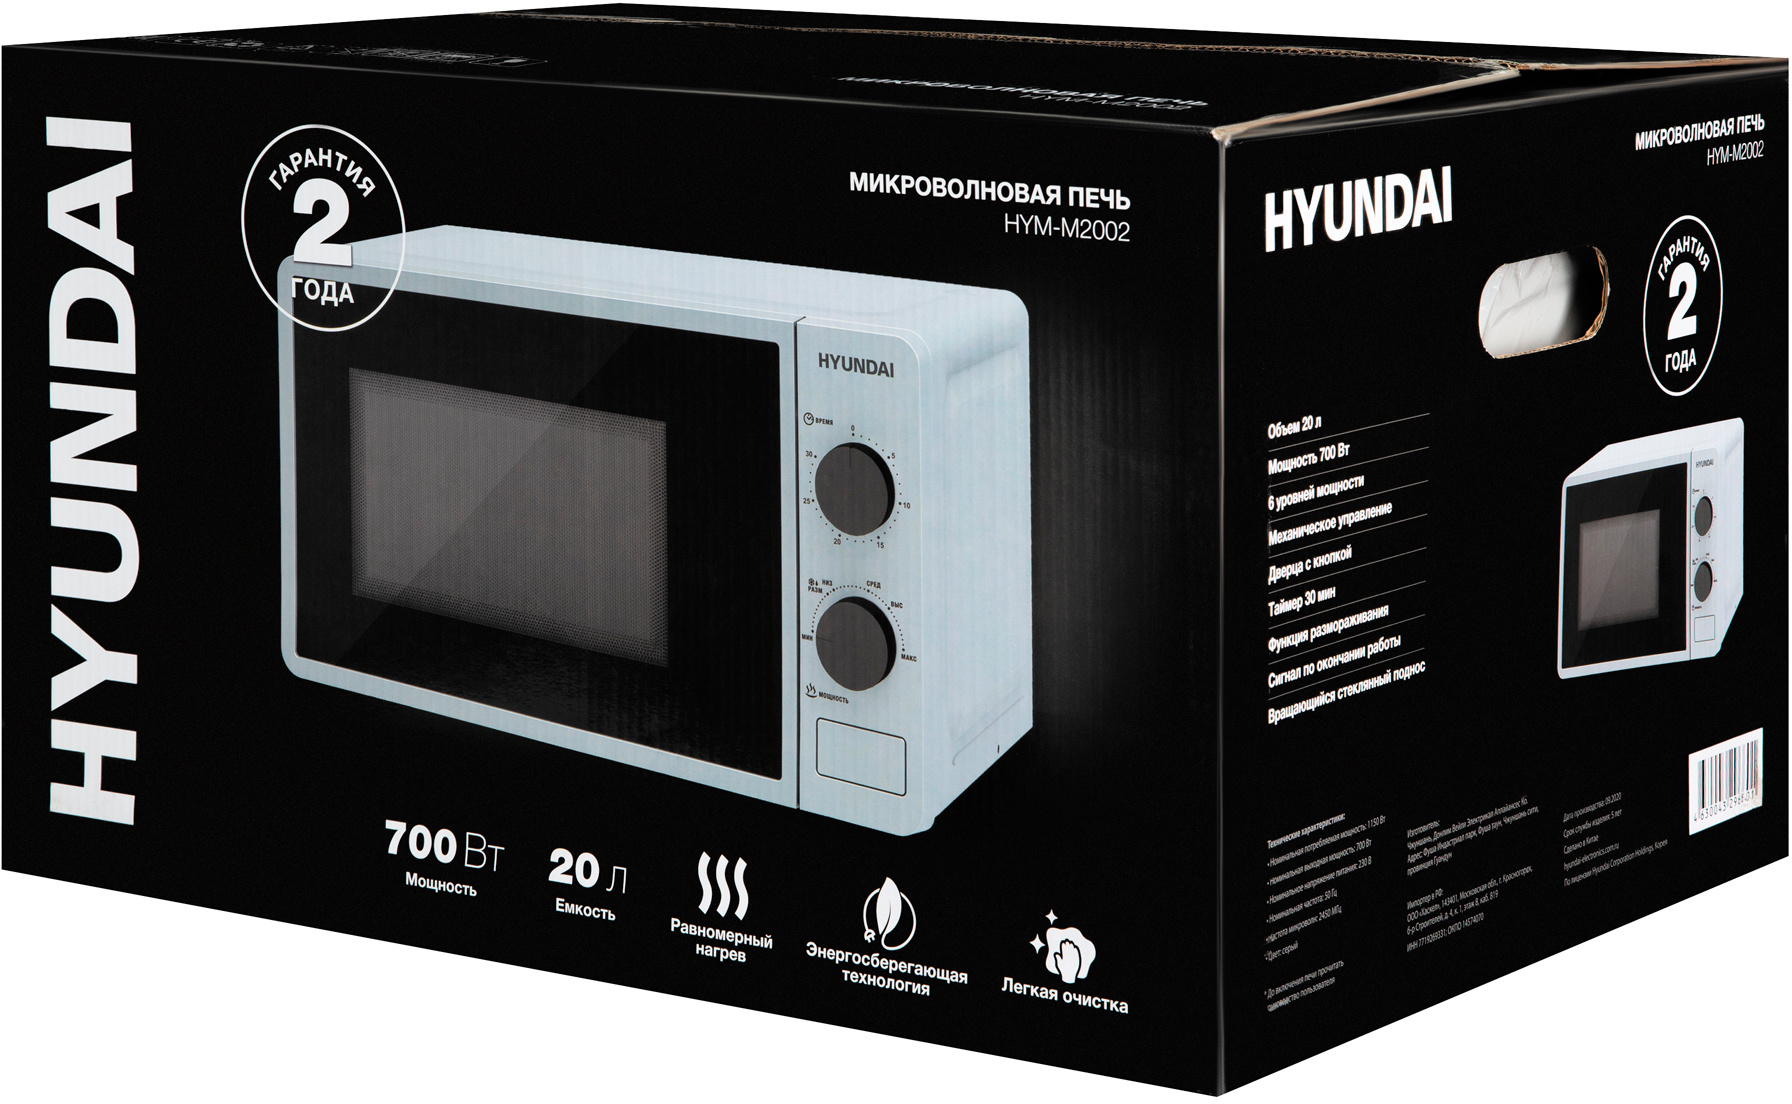 Микроволновая печь hyundai купить. СВЧ Hyundai HYM-m2042. Микроволновая печь Hyundai HYM-d3032. СВЧ-печь Hyundai HYM-d3027. Микроволновка Хендай.